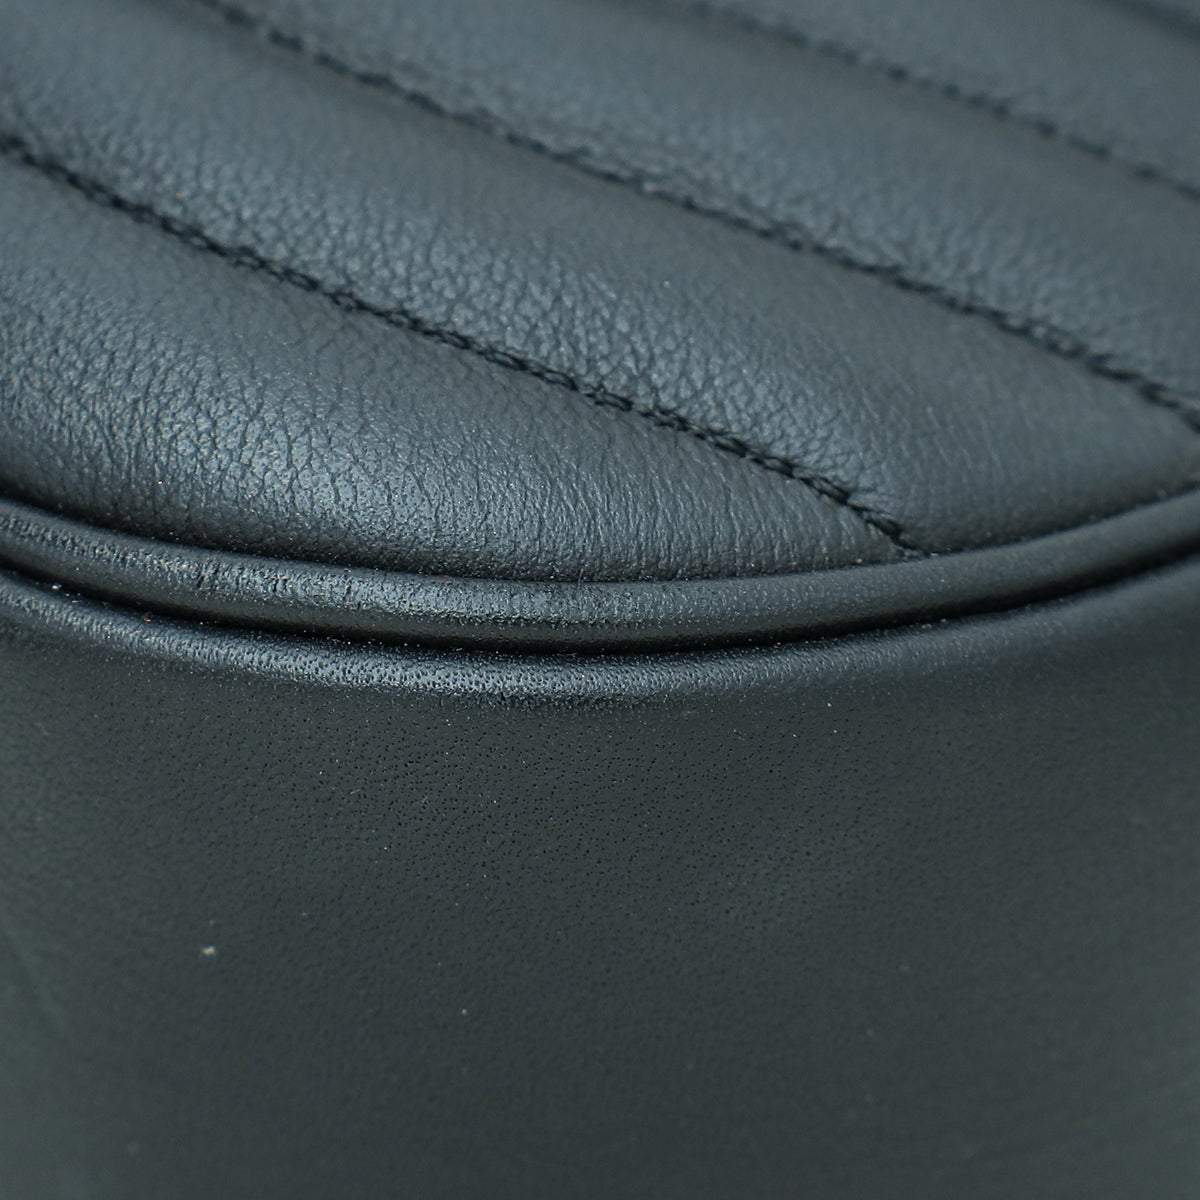 Louis Vuitton Black New Wave Chain Top Handle Flap MM Bag